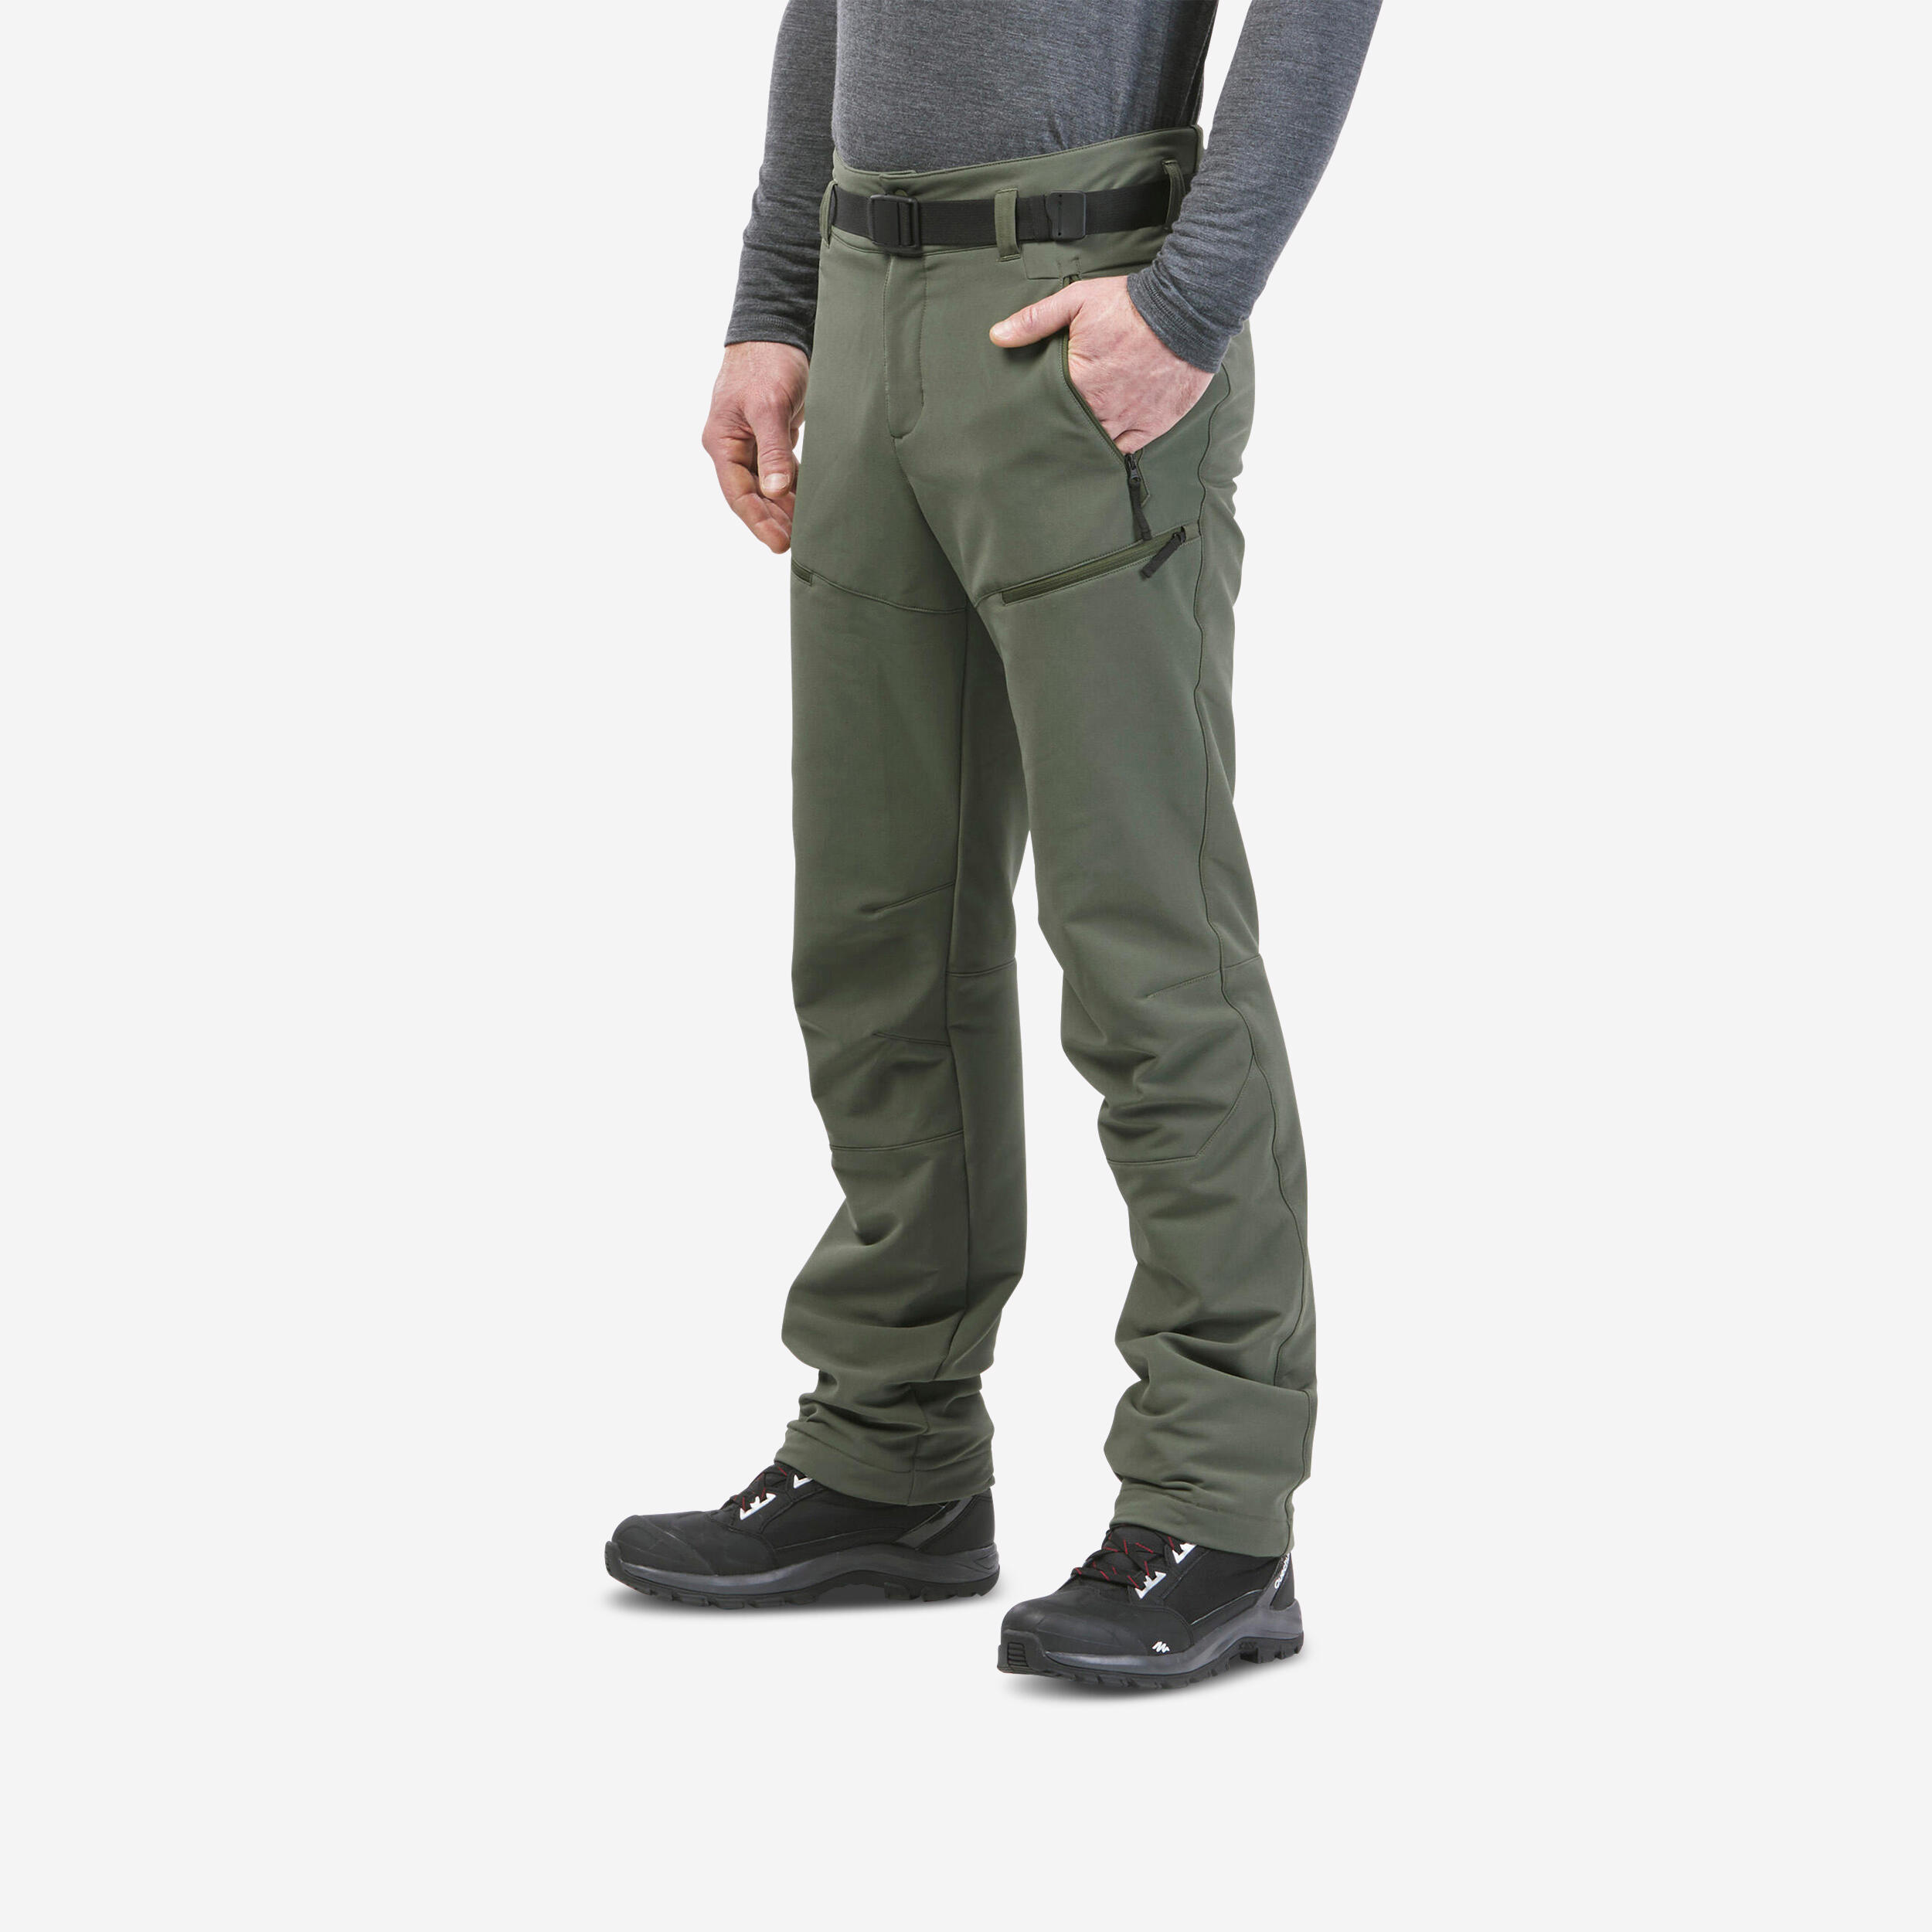 Winter Gear Essentials Mens Ultra Lightweight Buffer Pants Warm Sports  Hiking Pants